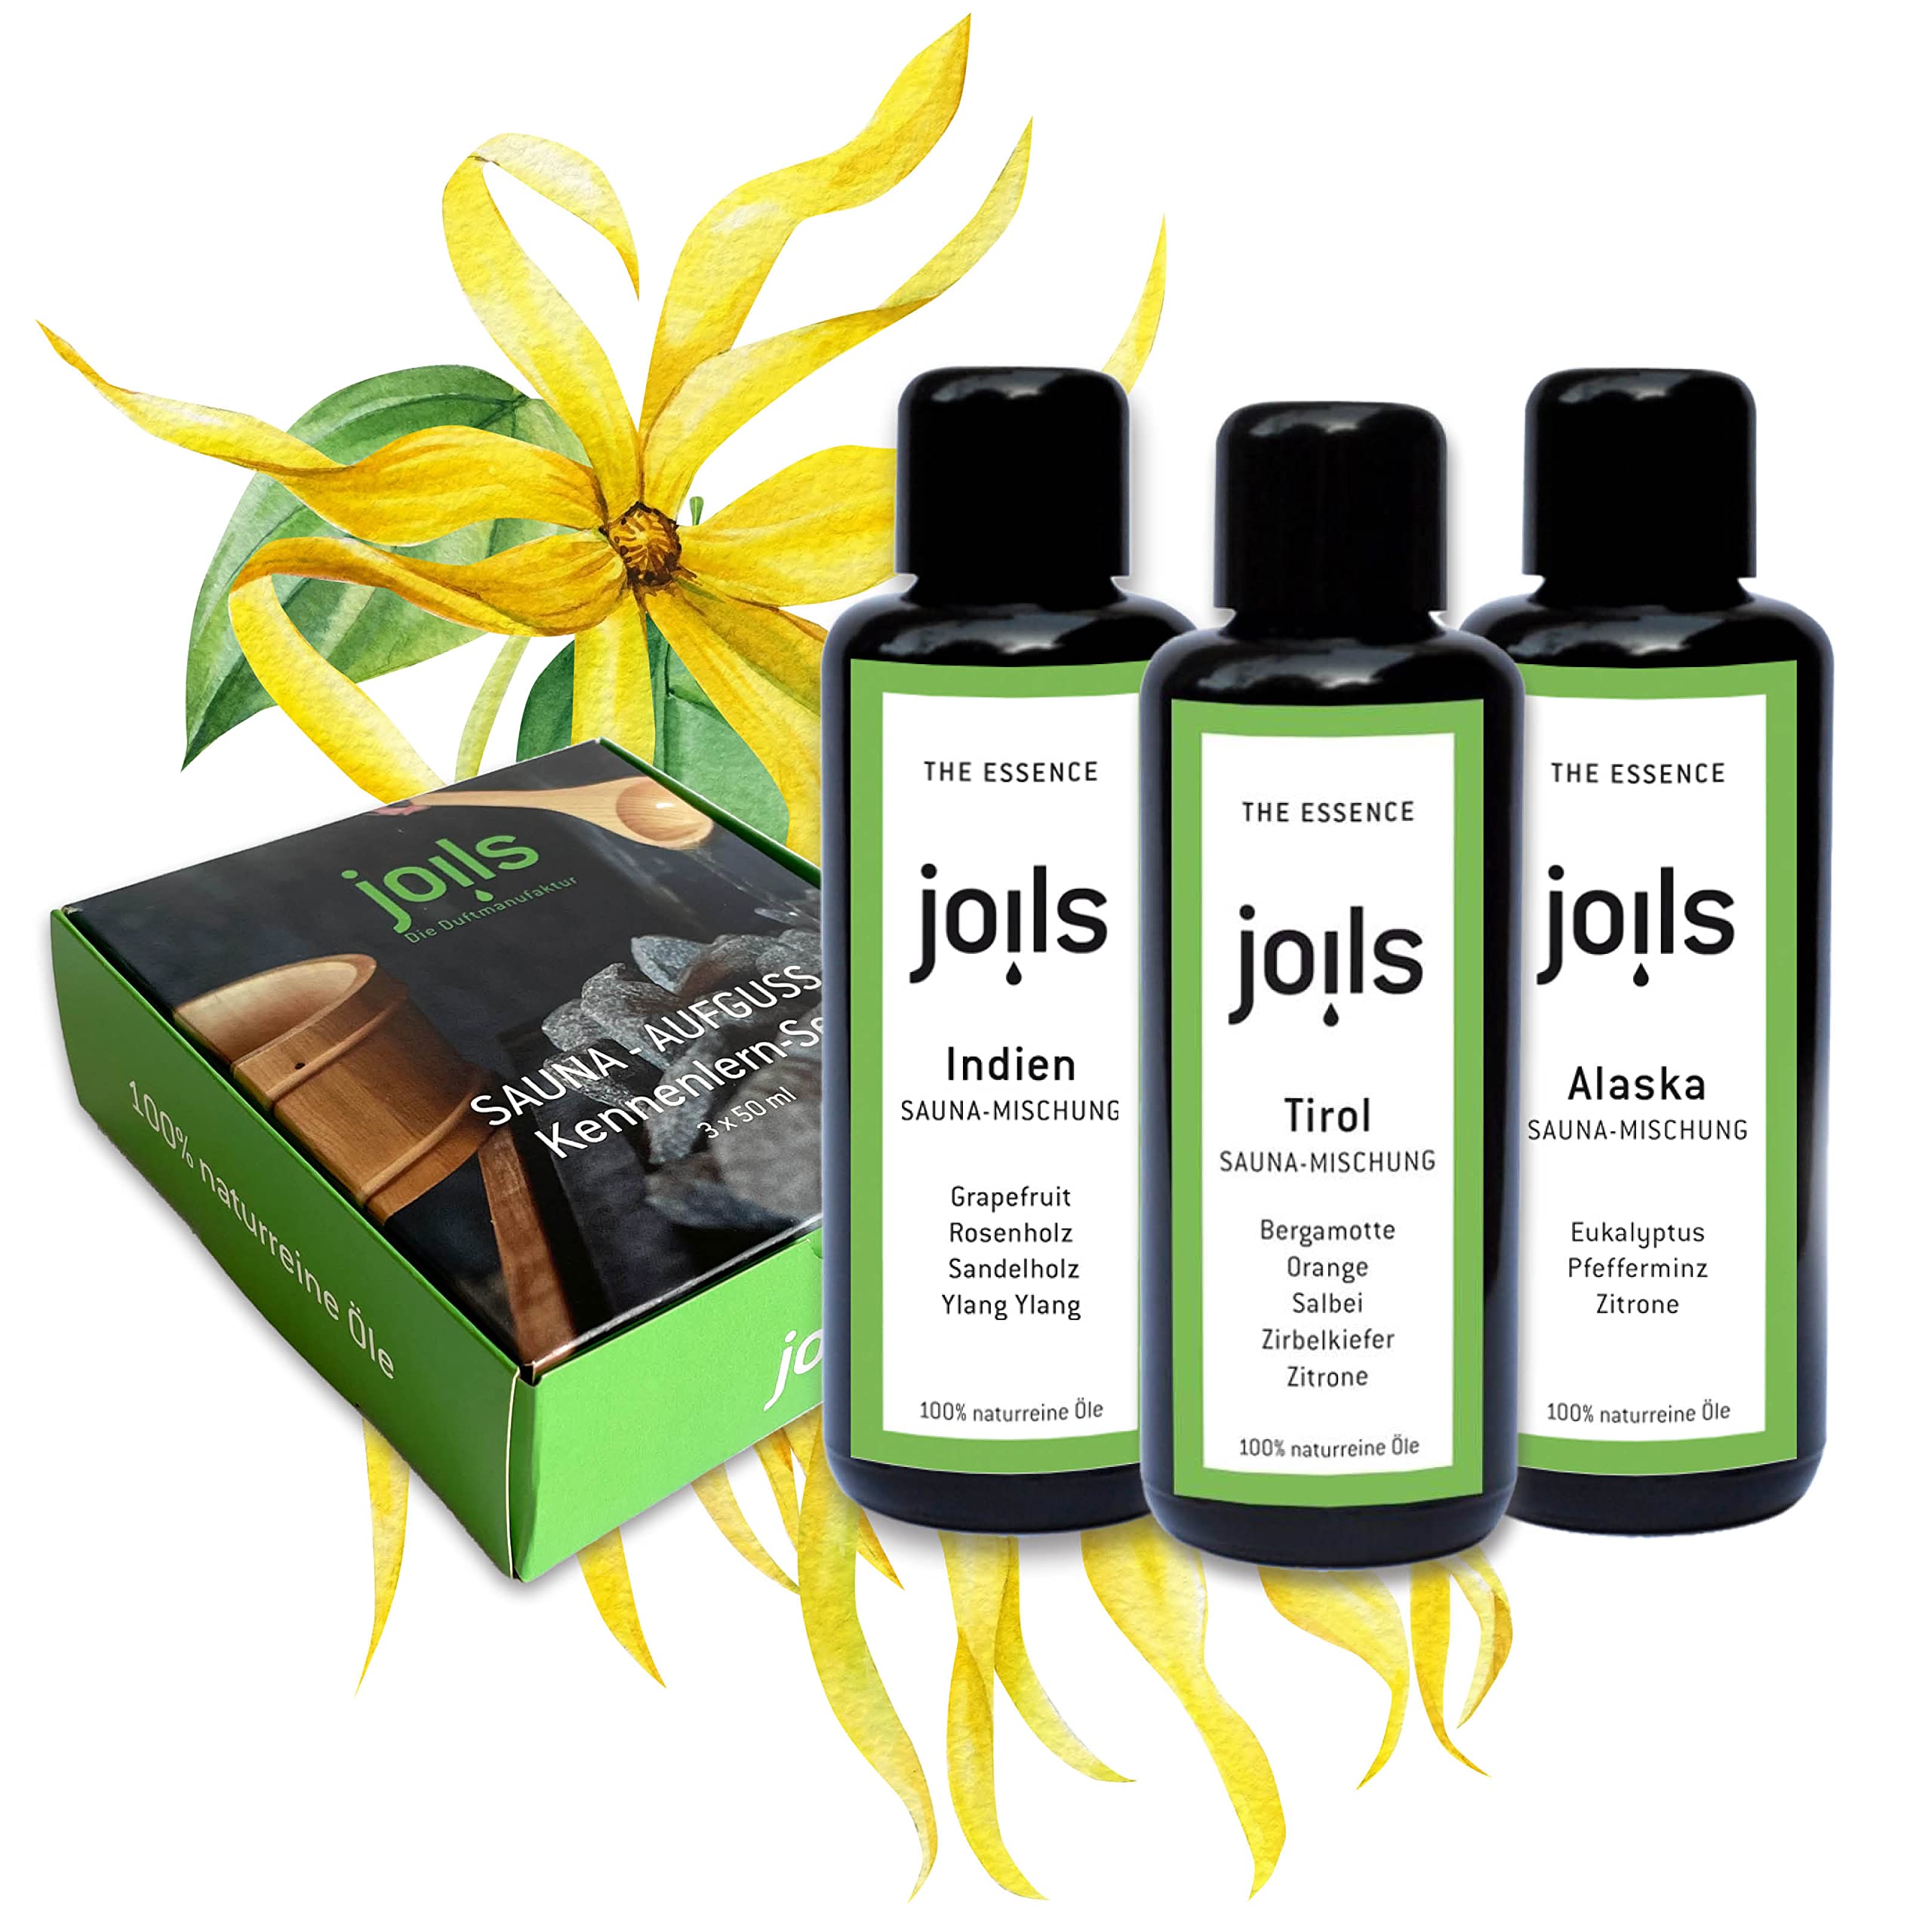 JOILS® Saunaaufguss Set II, naturrein, 3x100ml, 100% naturreines Öl für Ihre Sauna, Bio-Saunaöl im Geschenkset